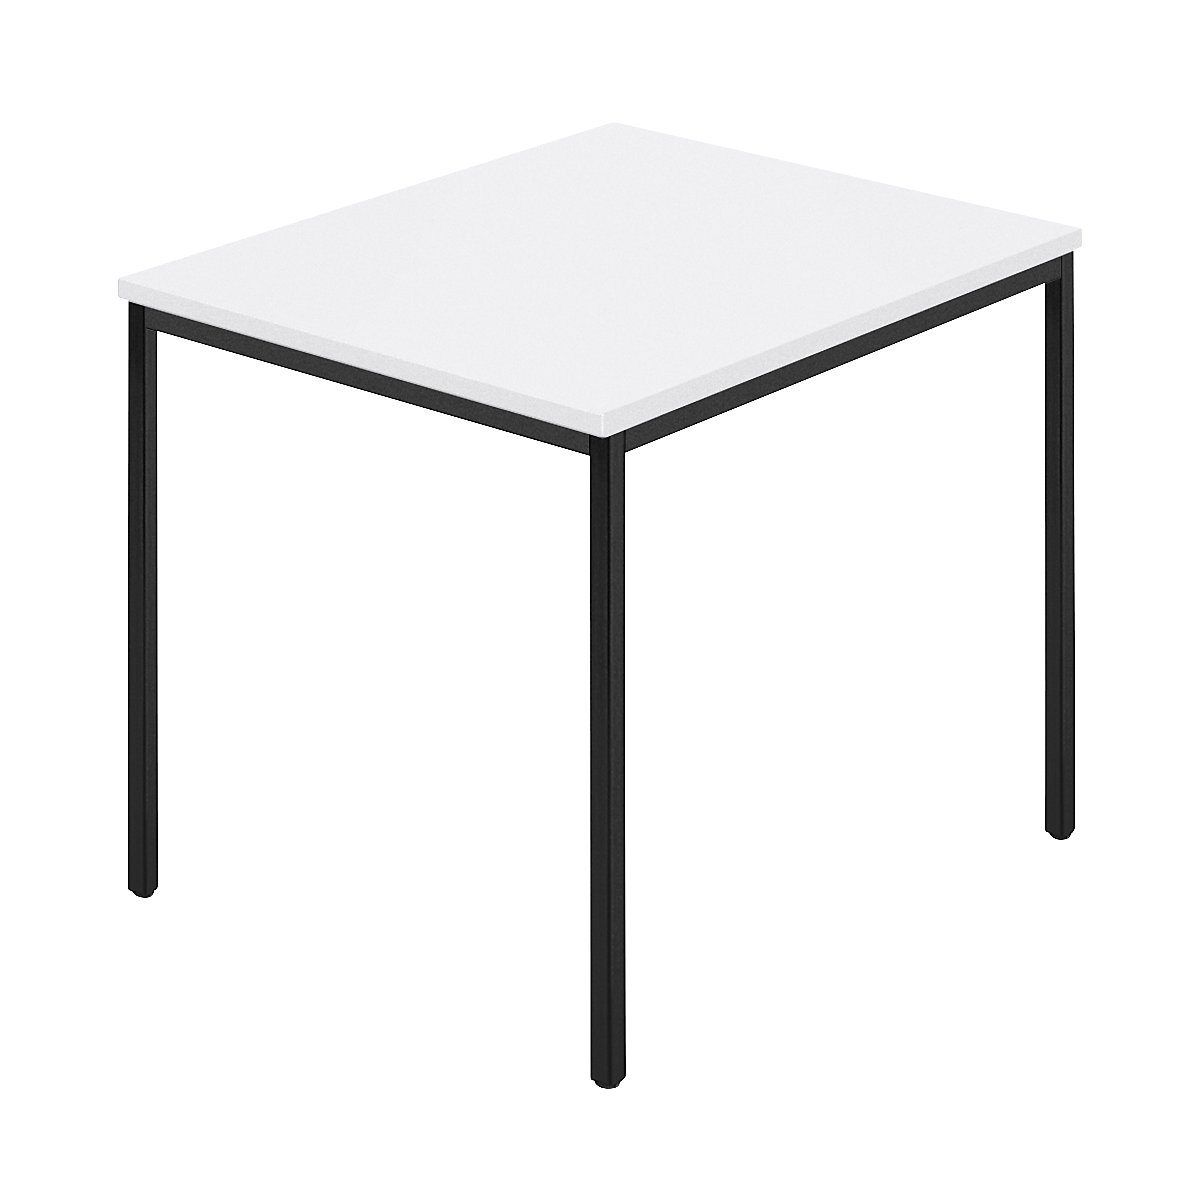 Table rectangulaire, tube carré plastifié, l x p 800 x 800 mm, blanc / anthracite-8